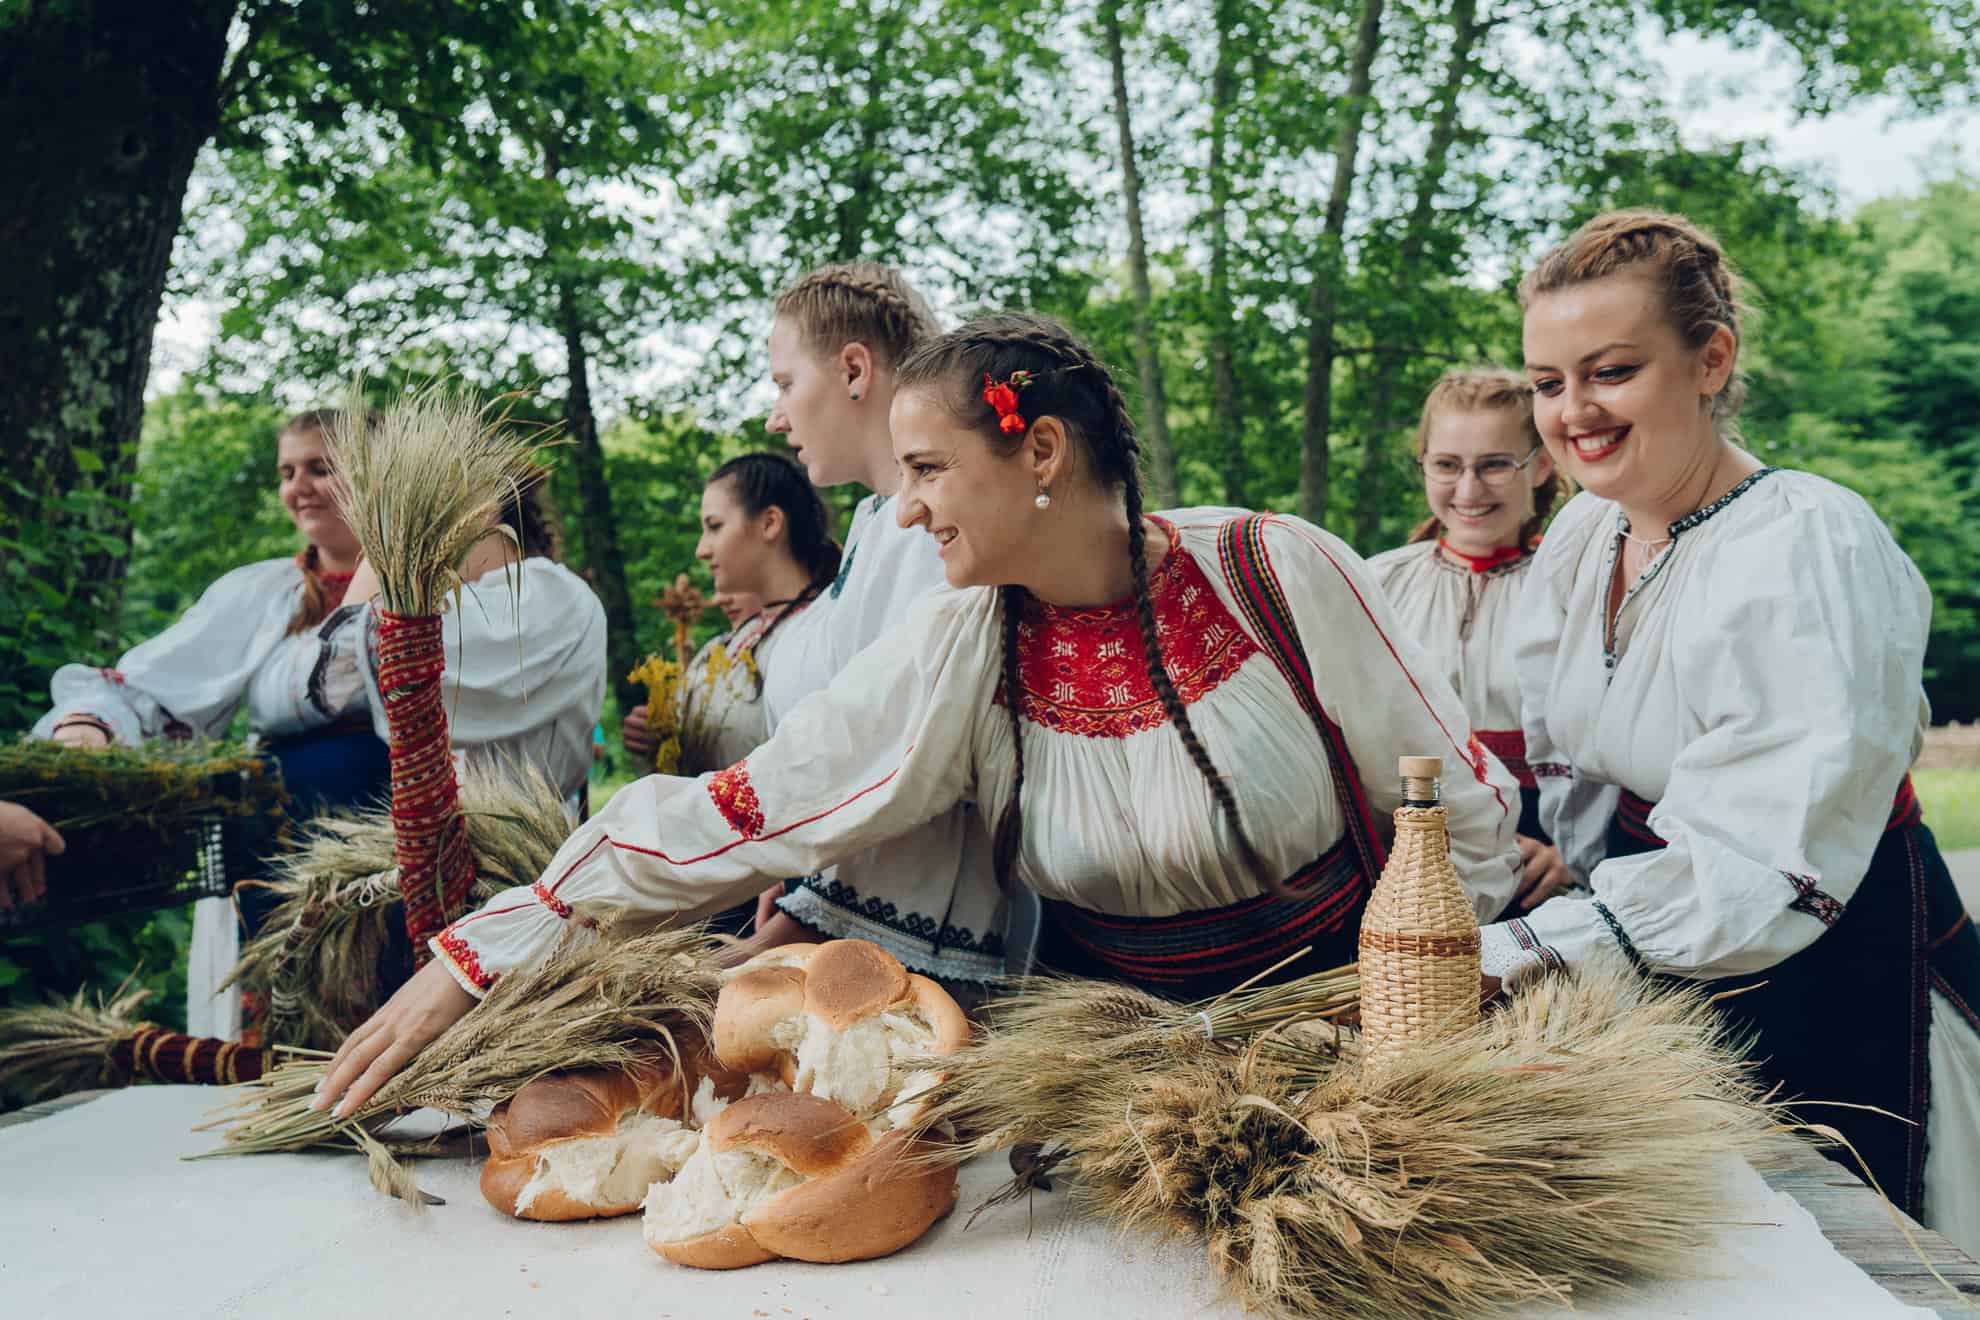 simpozion internațional despre costumul tradițional și patrimoniul cultural la muzeul astra